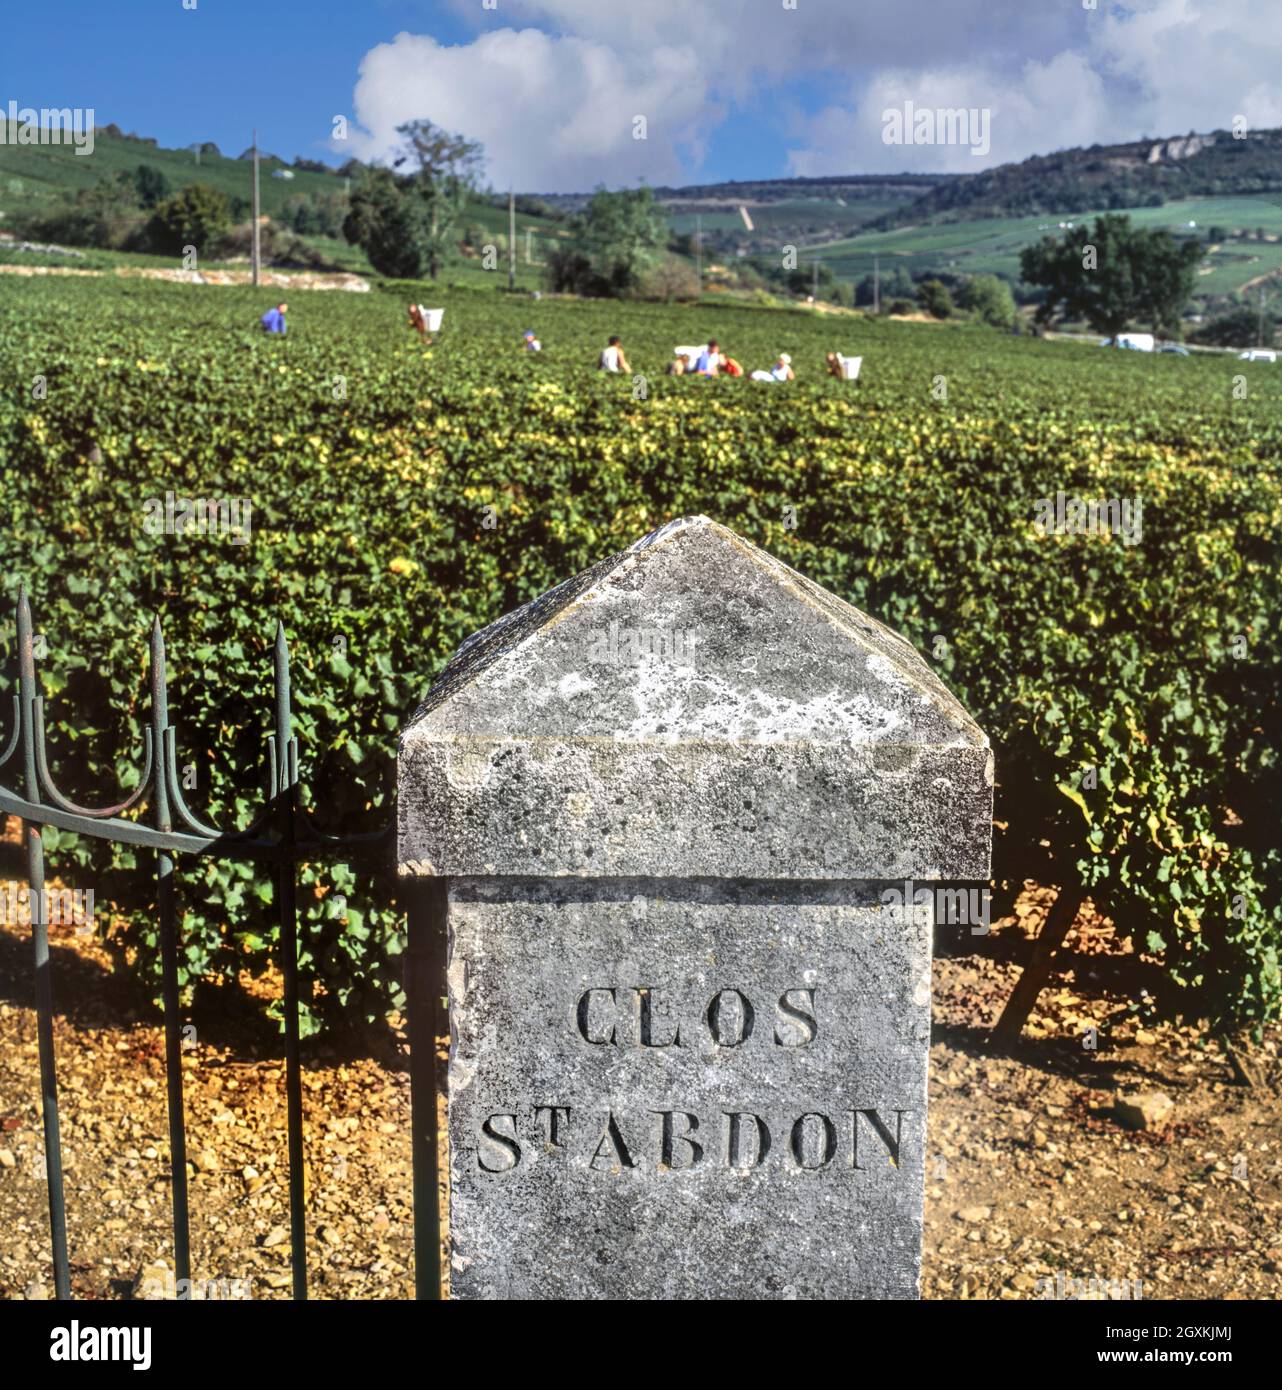 Le Clos St-Abdon marque de pierre à l'entrée du vignoble de Bourgogne avec vendanges de vendanges de vendanges de vendanges qui ont lieu Chassagne-Montrachet, Côte d'Or, France. [Côte de Beaune] Banque D'Images